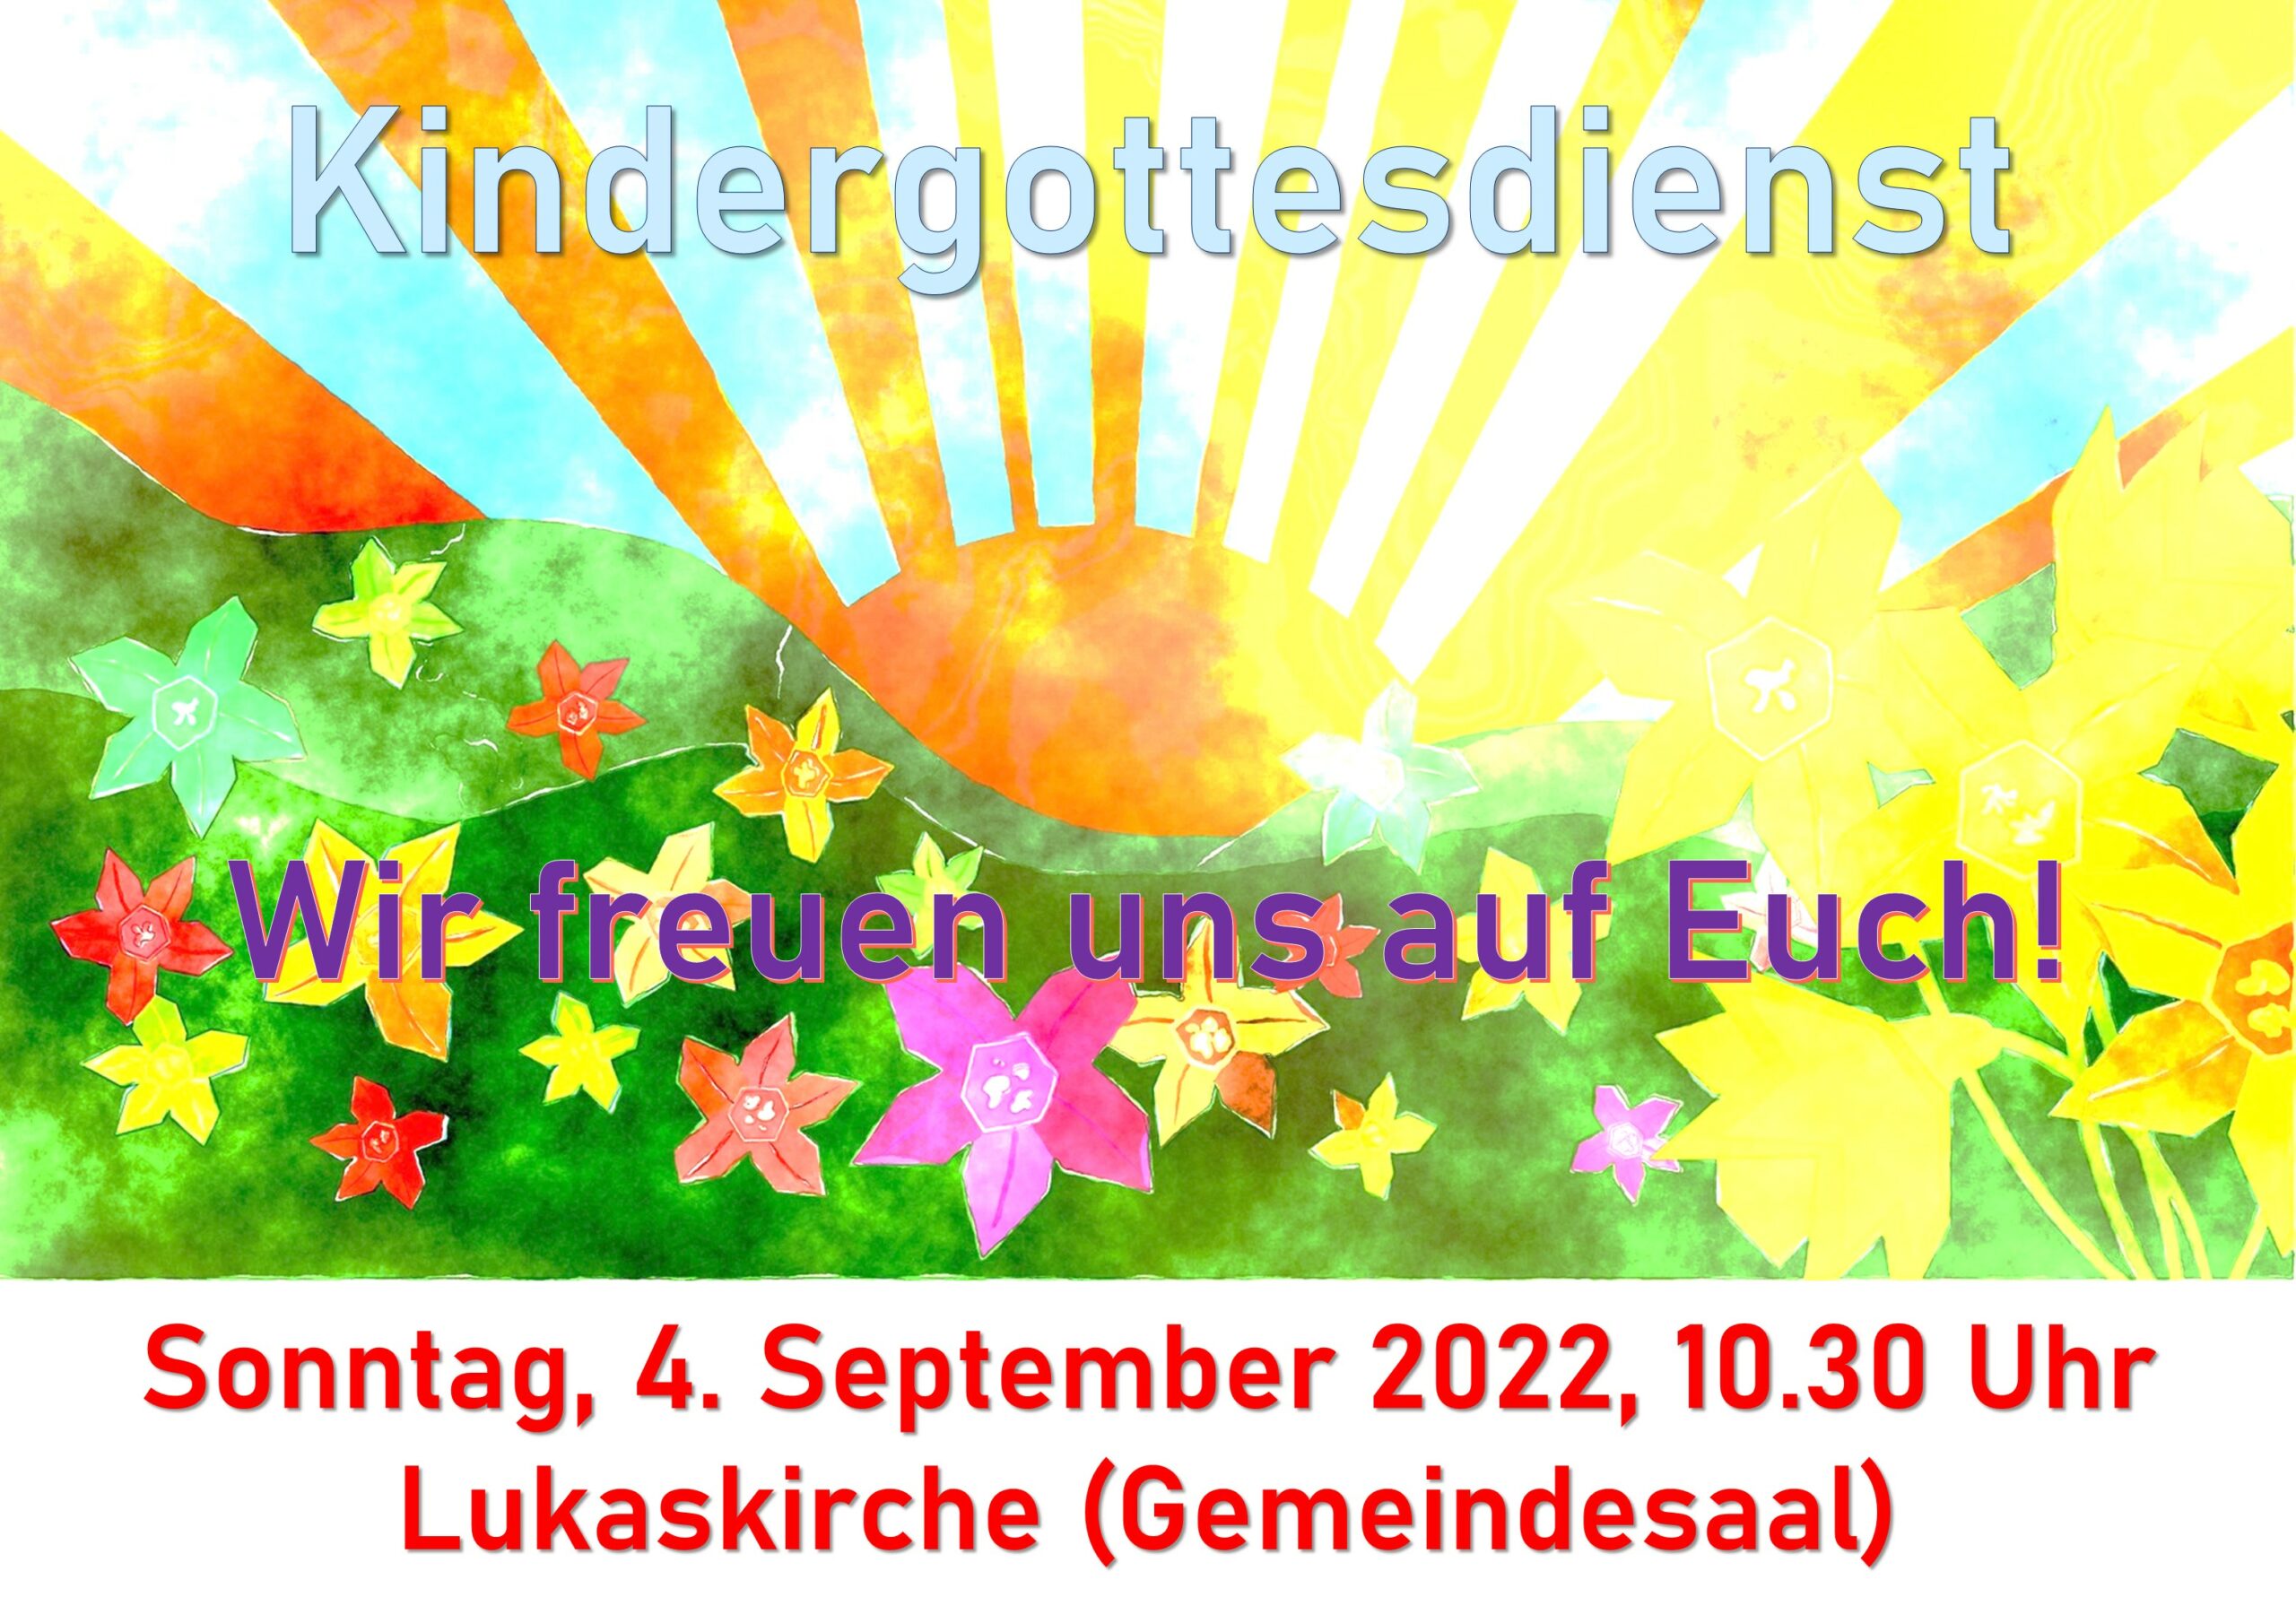 KIndergottesdienst am 4. September 2022 um 10.30 Uhr im Saal der Lukaskirche, Kaiser-Karl-Ring 25A. Wir freuen uns auf Euch!